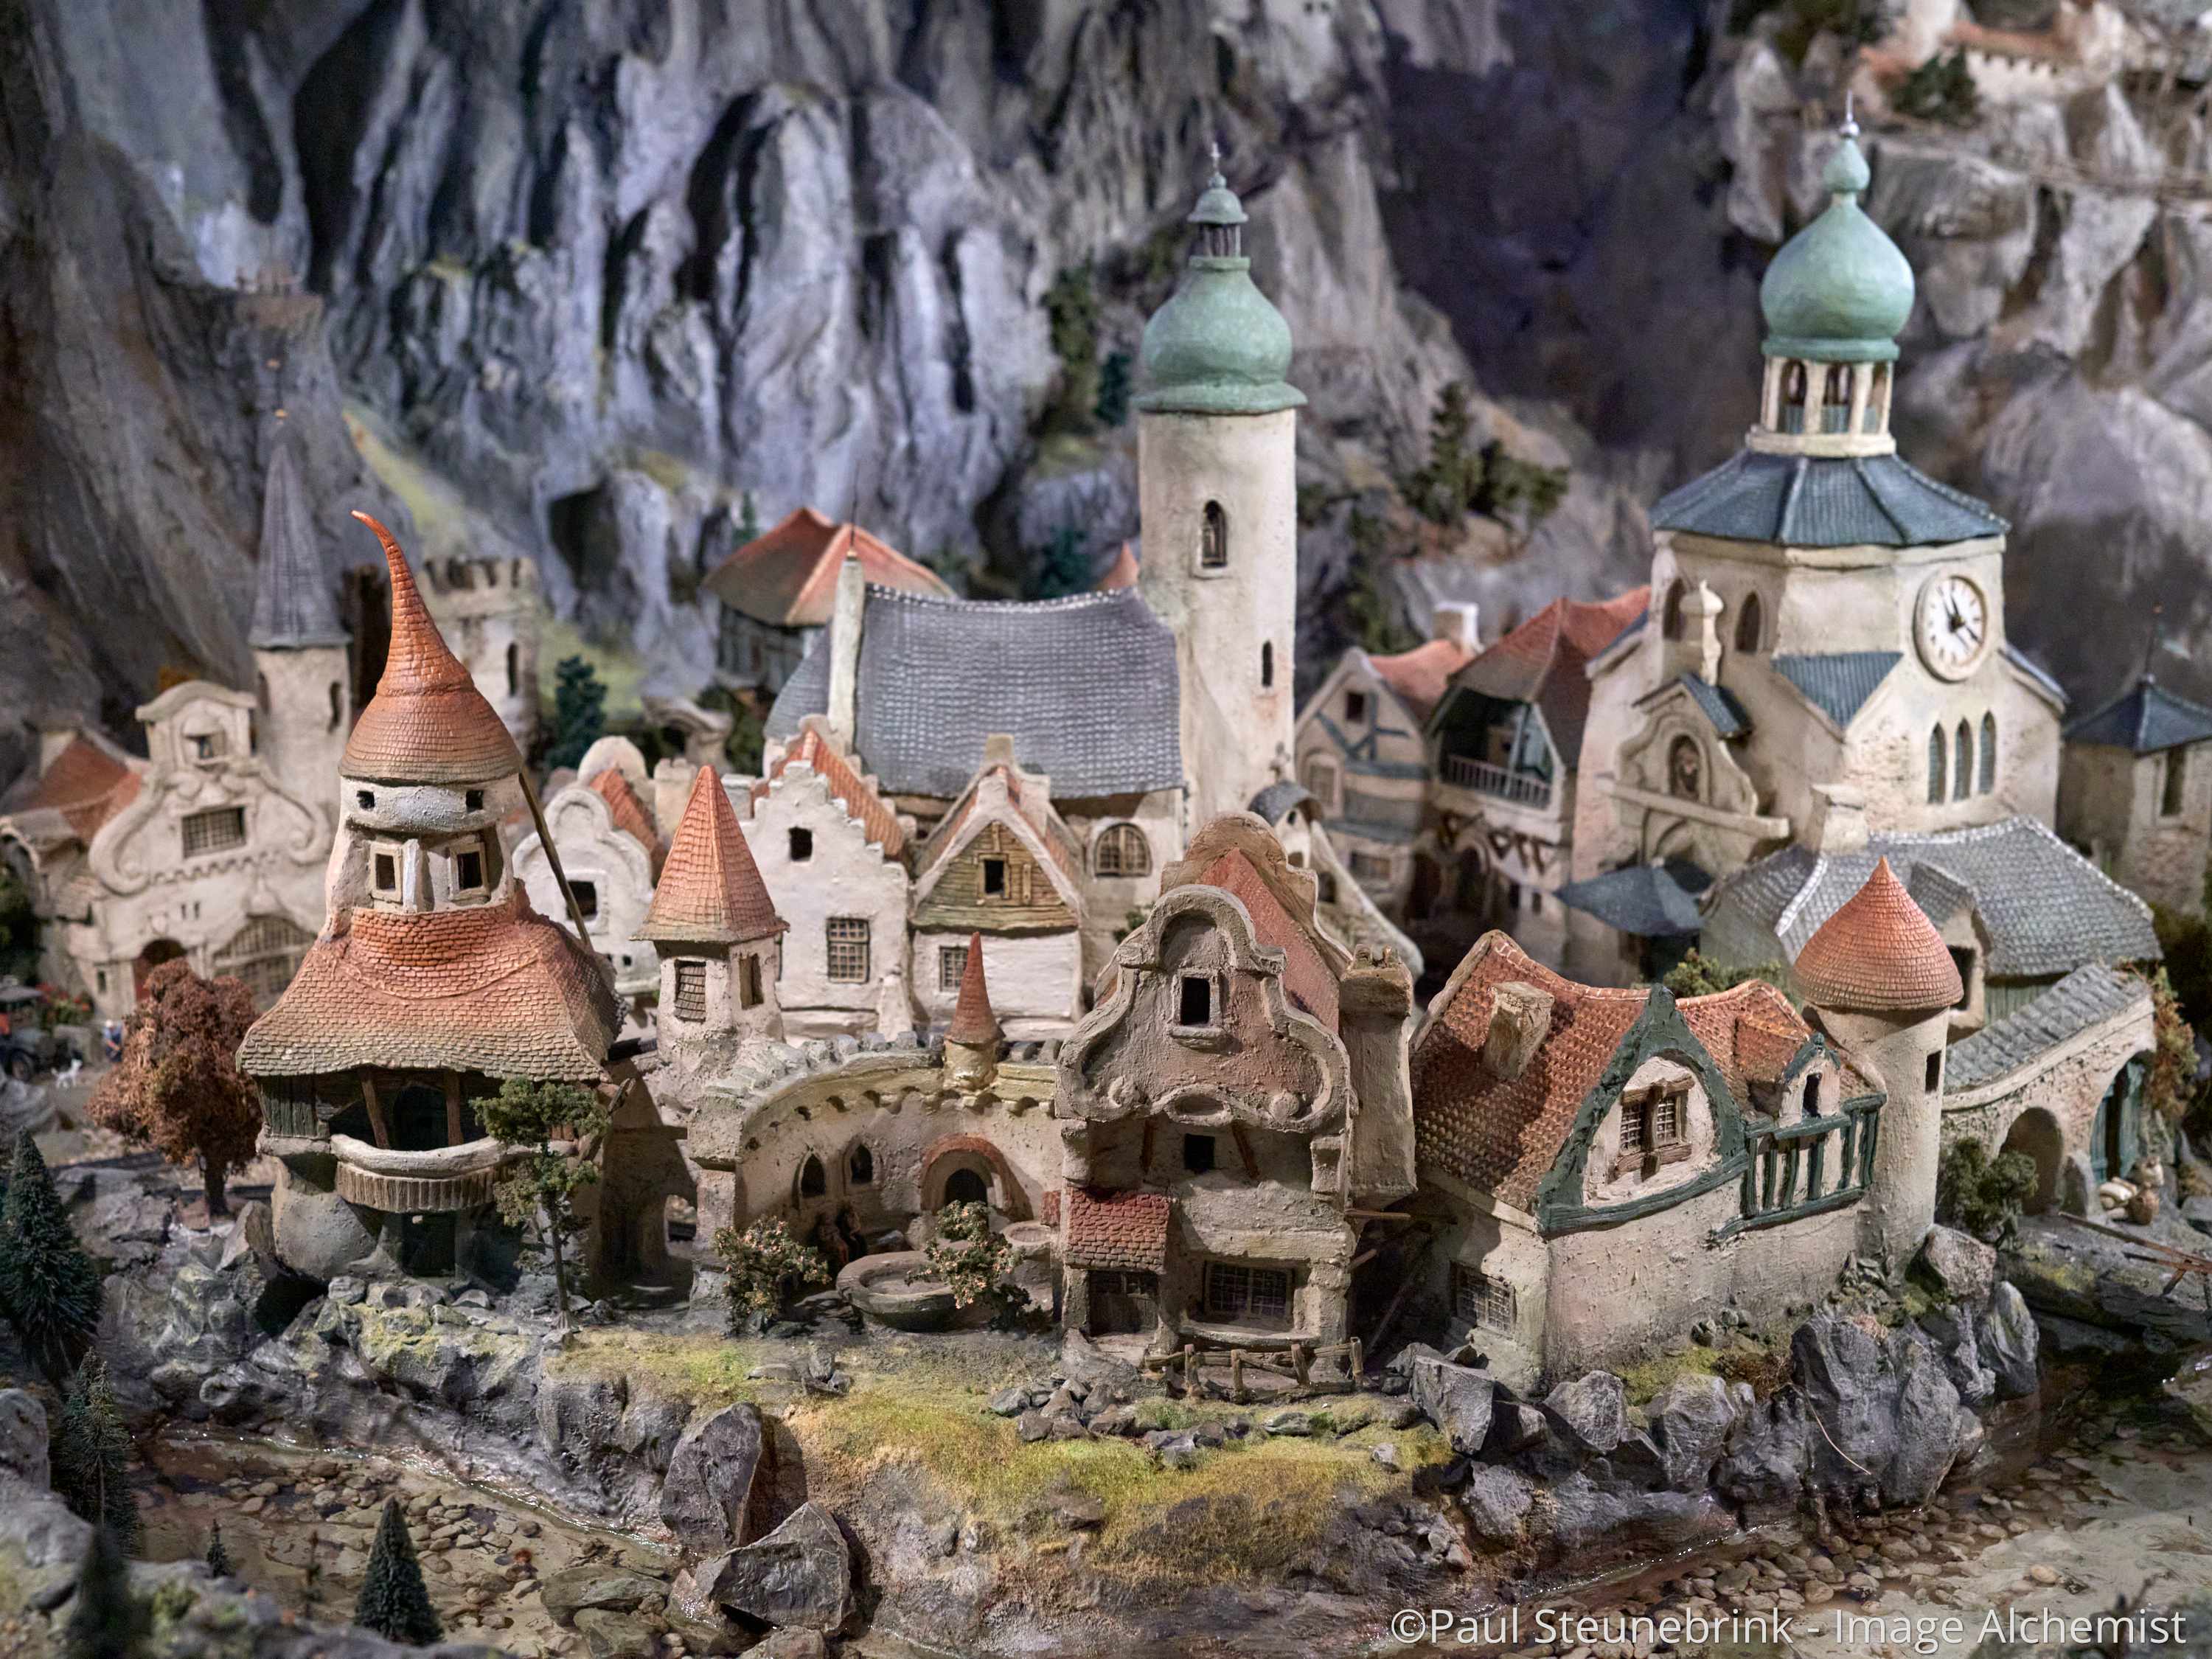 fantasy village in diorama at Efteling, Netherlands, capture one 20